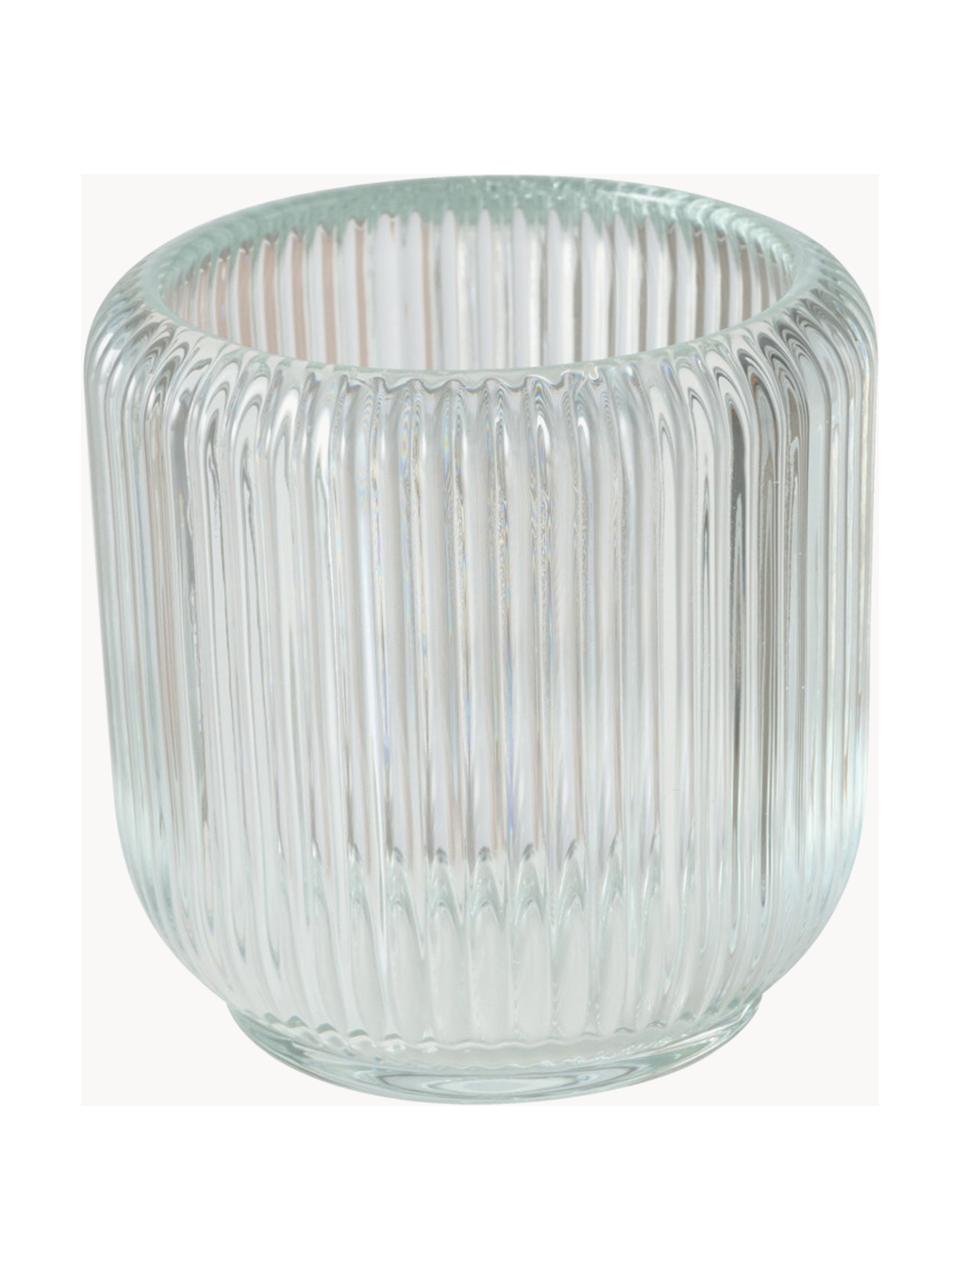 Glas-Windlichter Reguna mit Rillenrelief, 3er-Set, Glas, Transparent, Ø 9 x H 8 cm